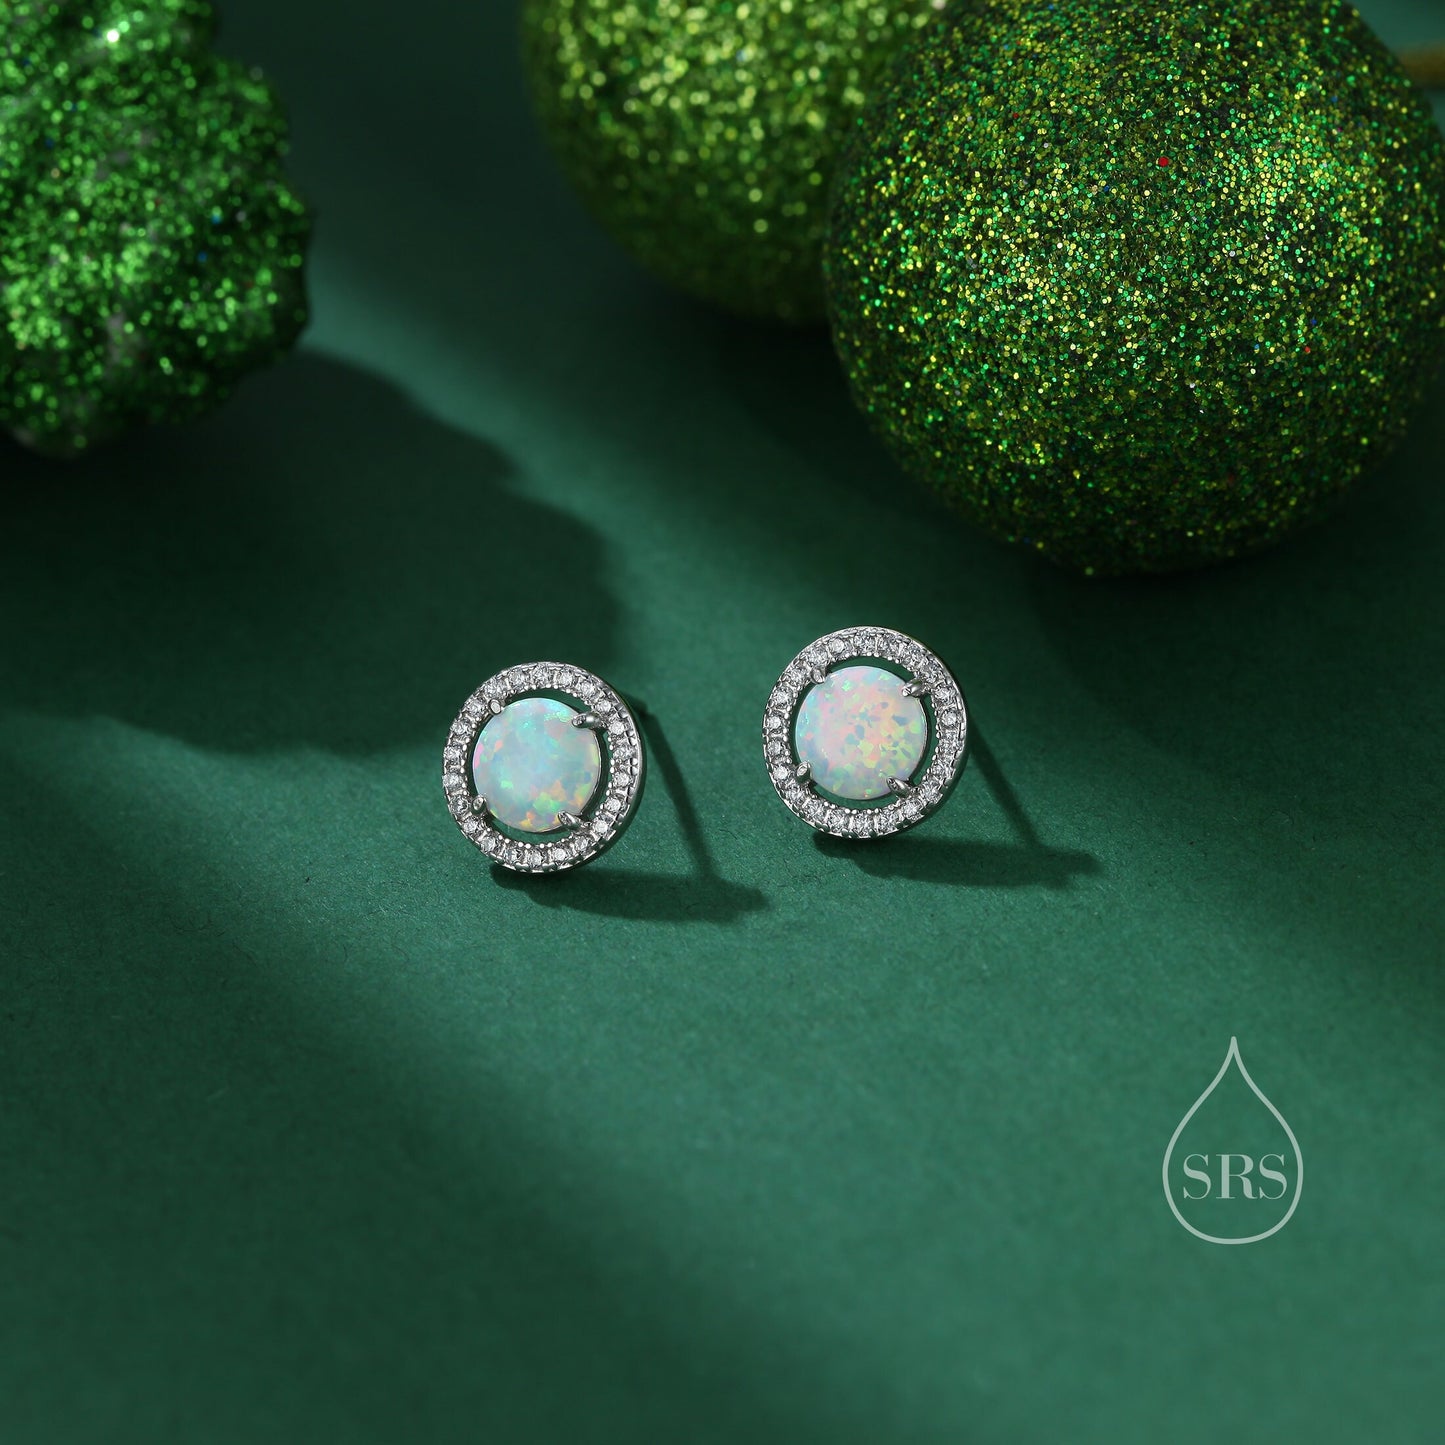 Opal CZ Halo Stud Earrings in Sterling Silver - 8mm - Blue or White Opal, Sustainable Lab Opal - Petite Stud Earrings